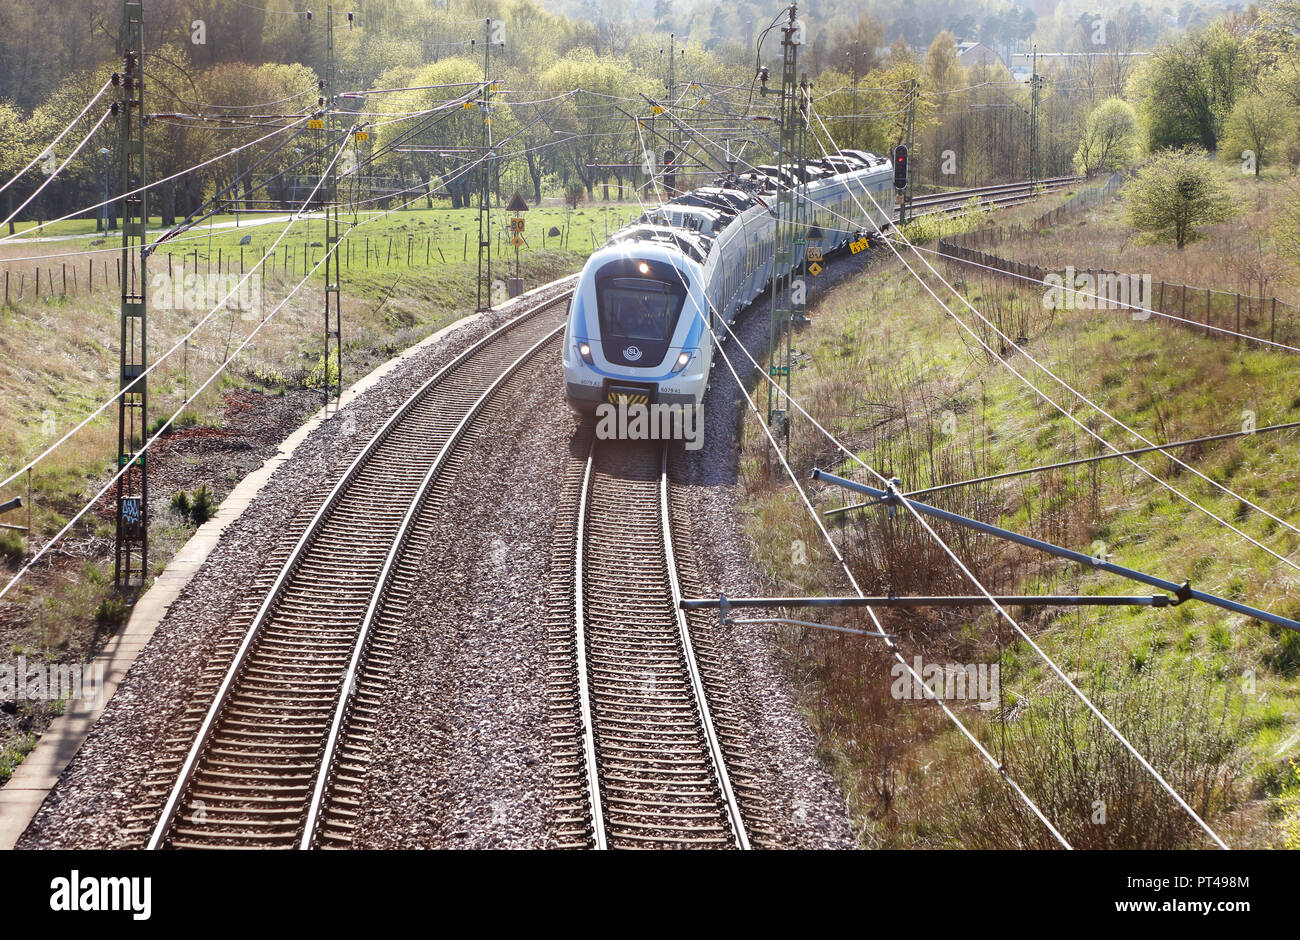 Sodertalje, Suecia - 27 de abril de 2014: UN SL el transporte público de cercanías tren de pasajeros lass X60 ha dejado la estación Ostertalje y rumbo Stoc Foto de stock